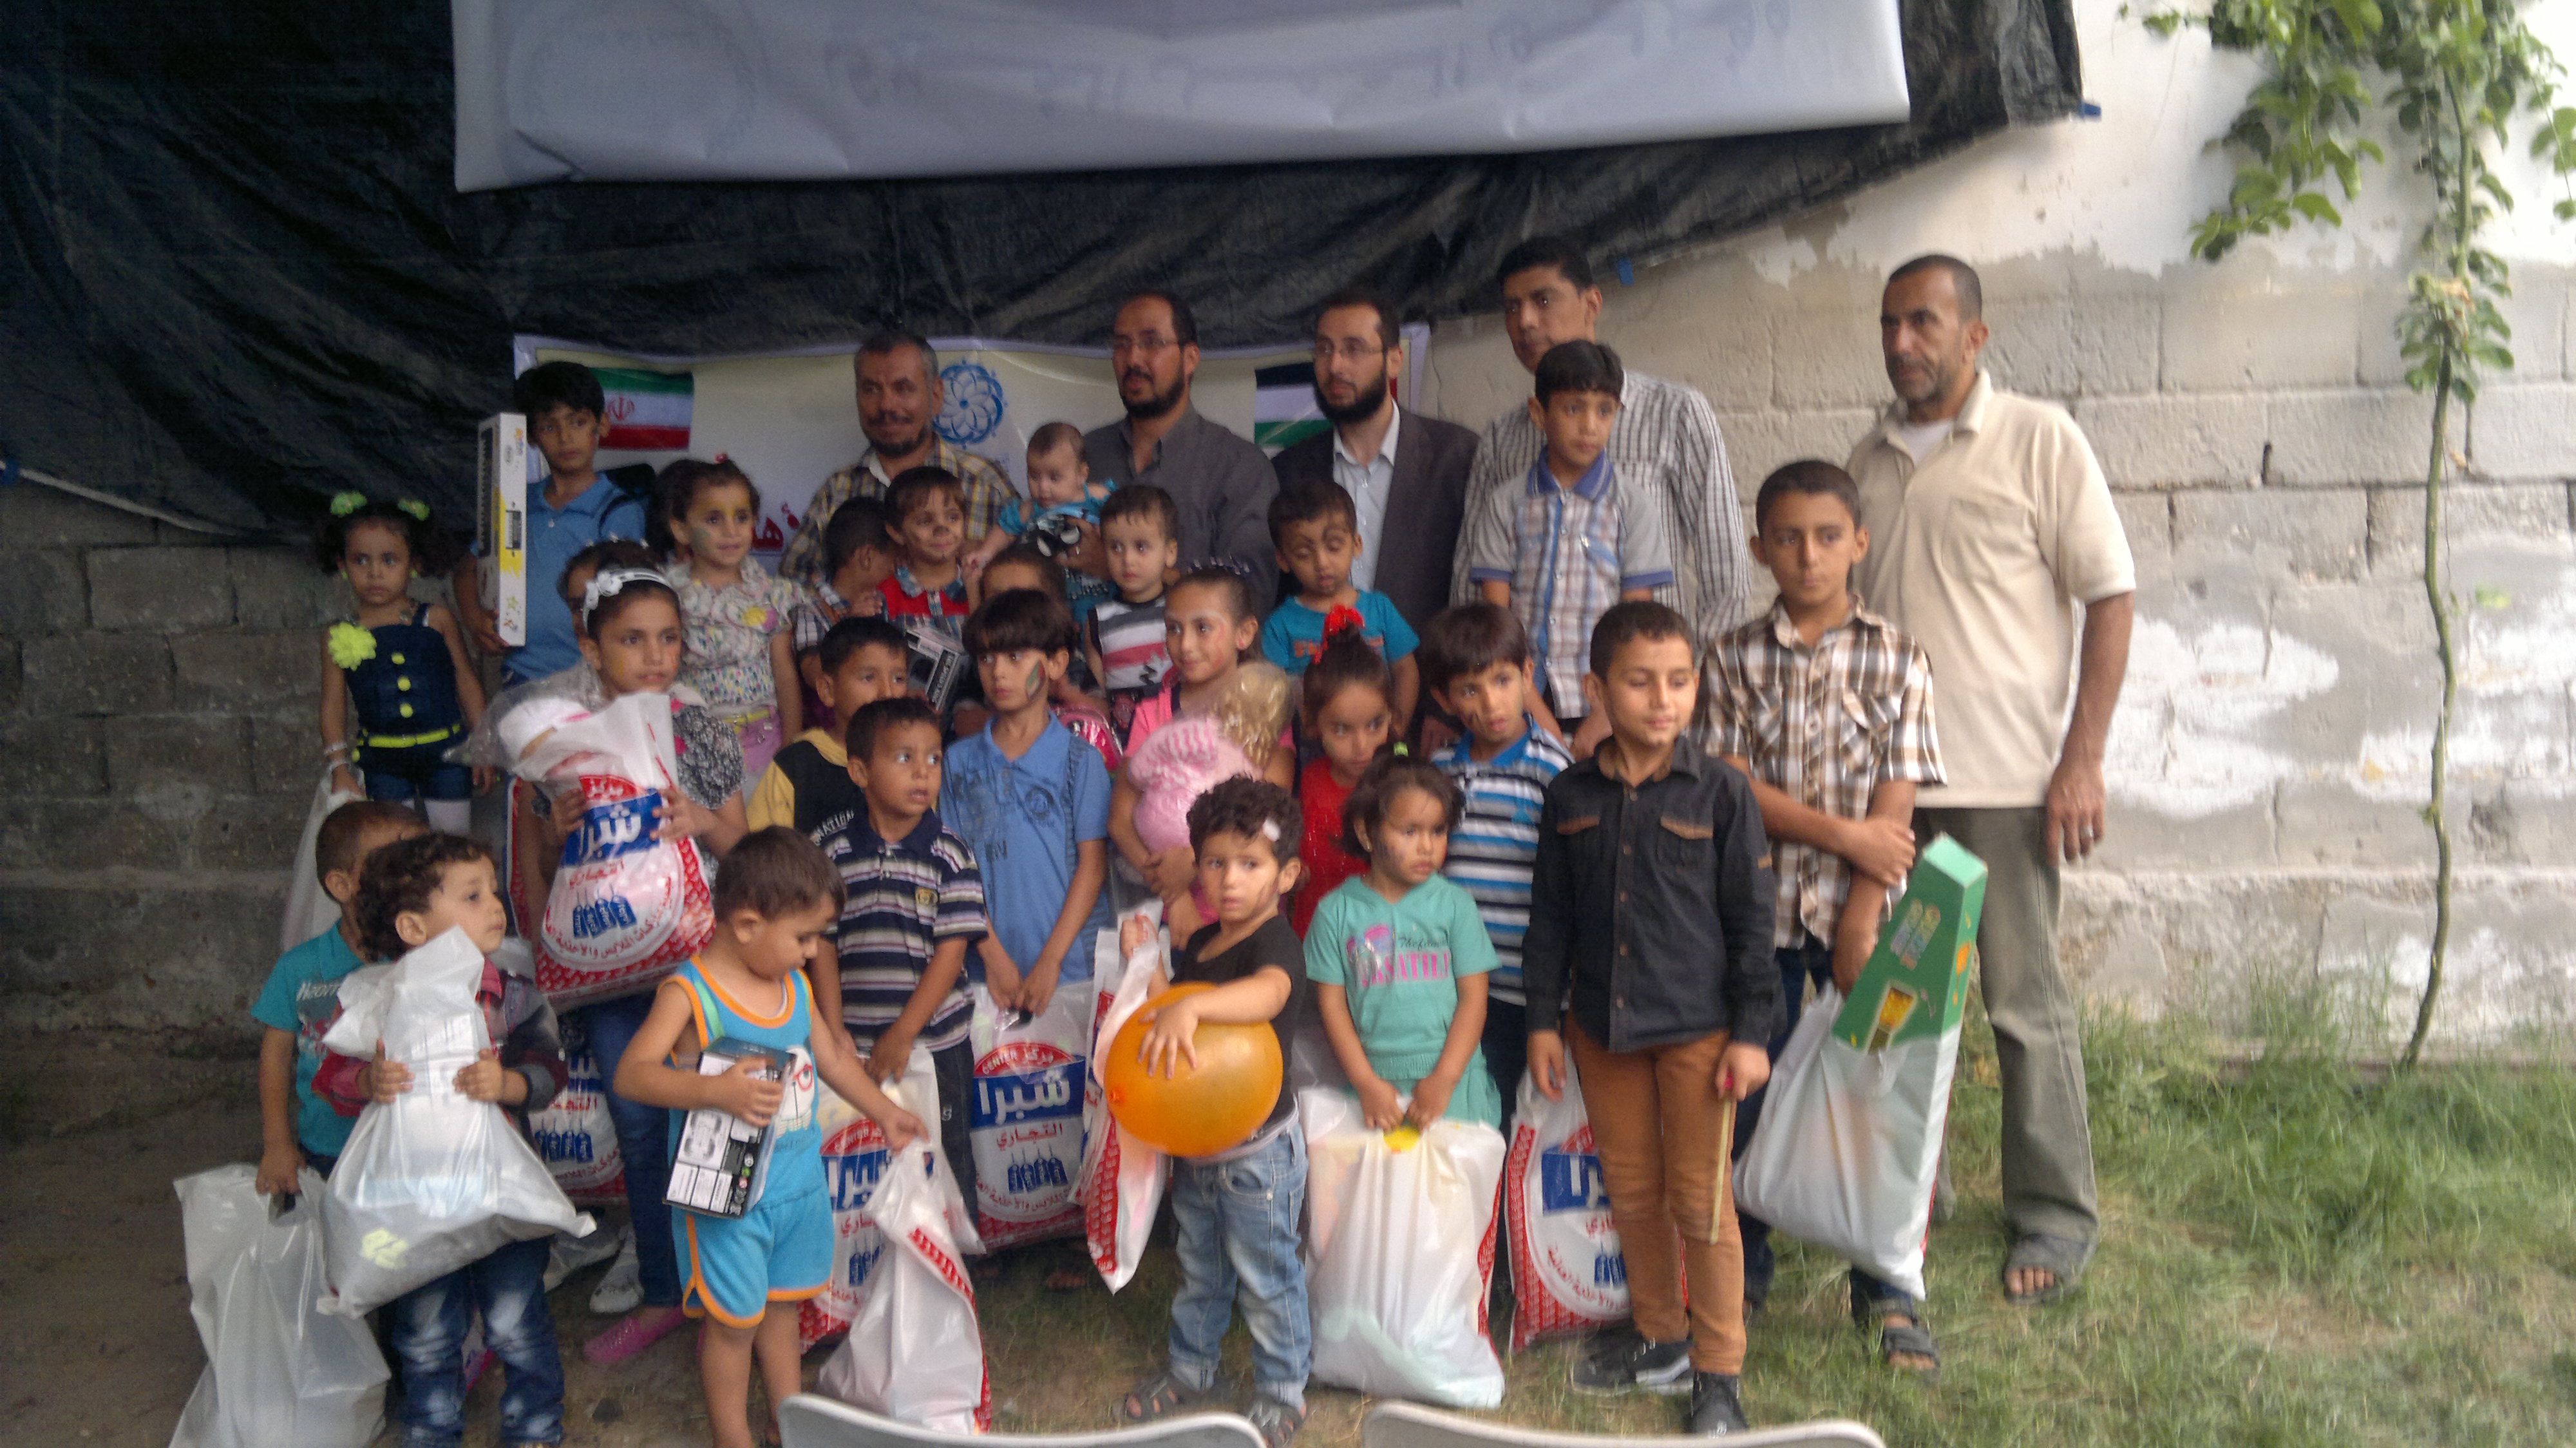 اولین مرحله از کمک های مردمی ایران به غزه رسید

لبیک غزه به پویش فرهیختگان ایرانی